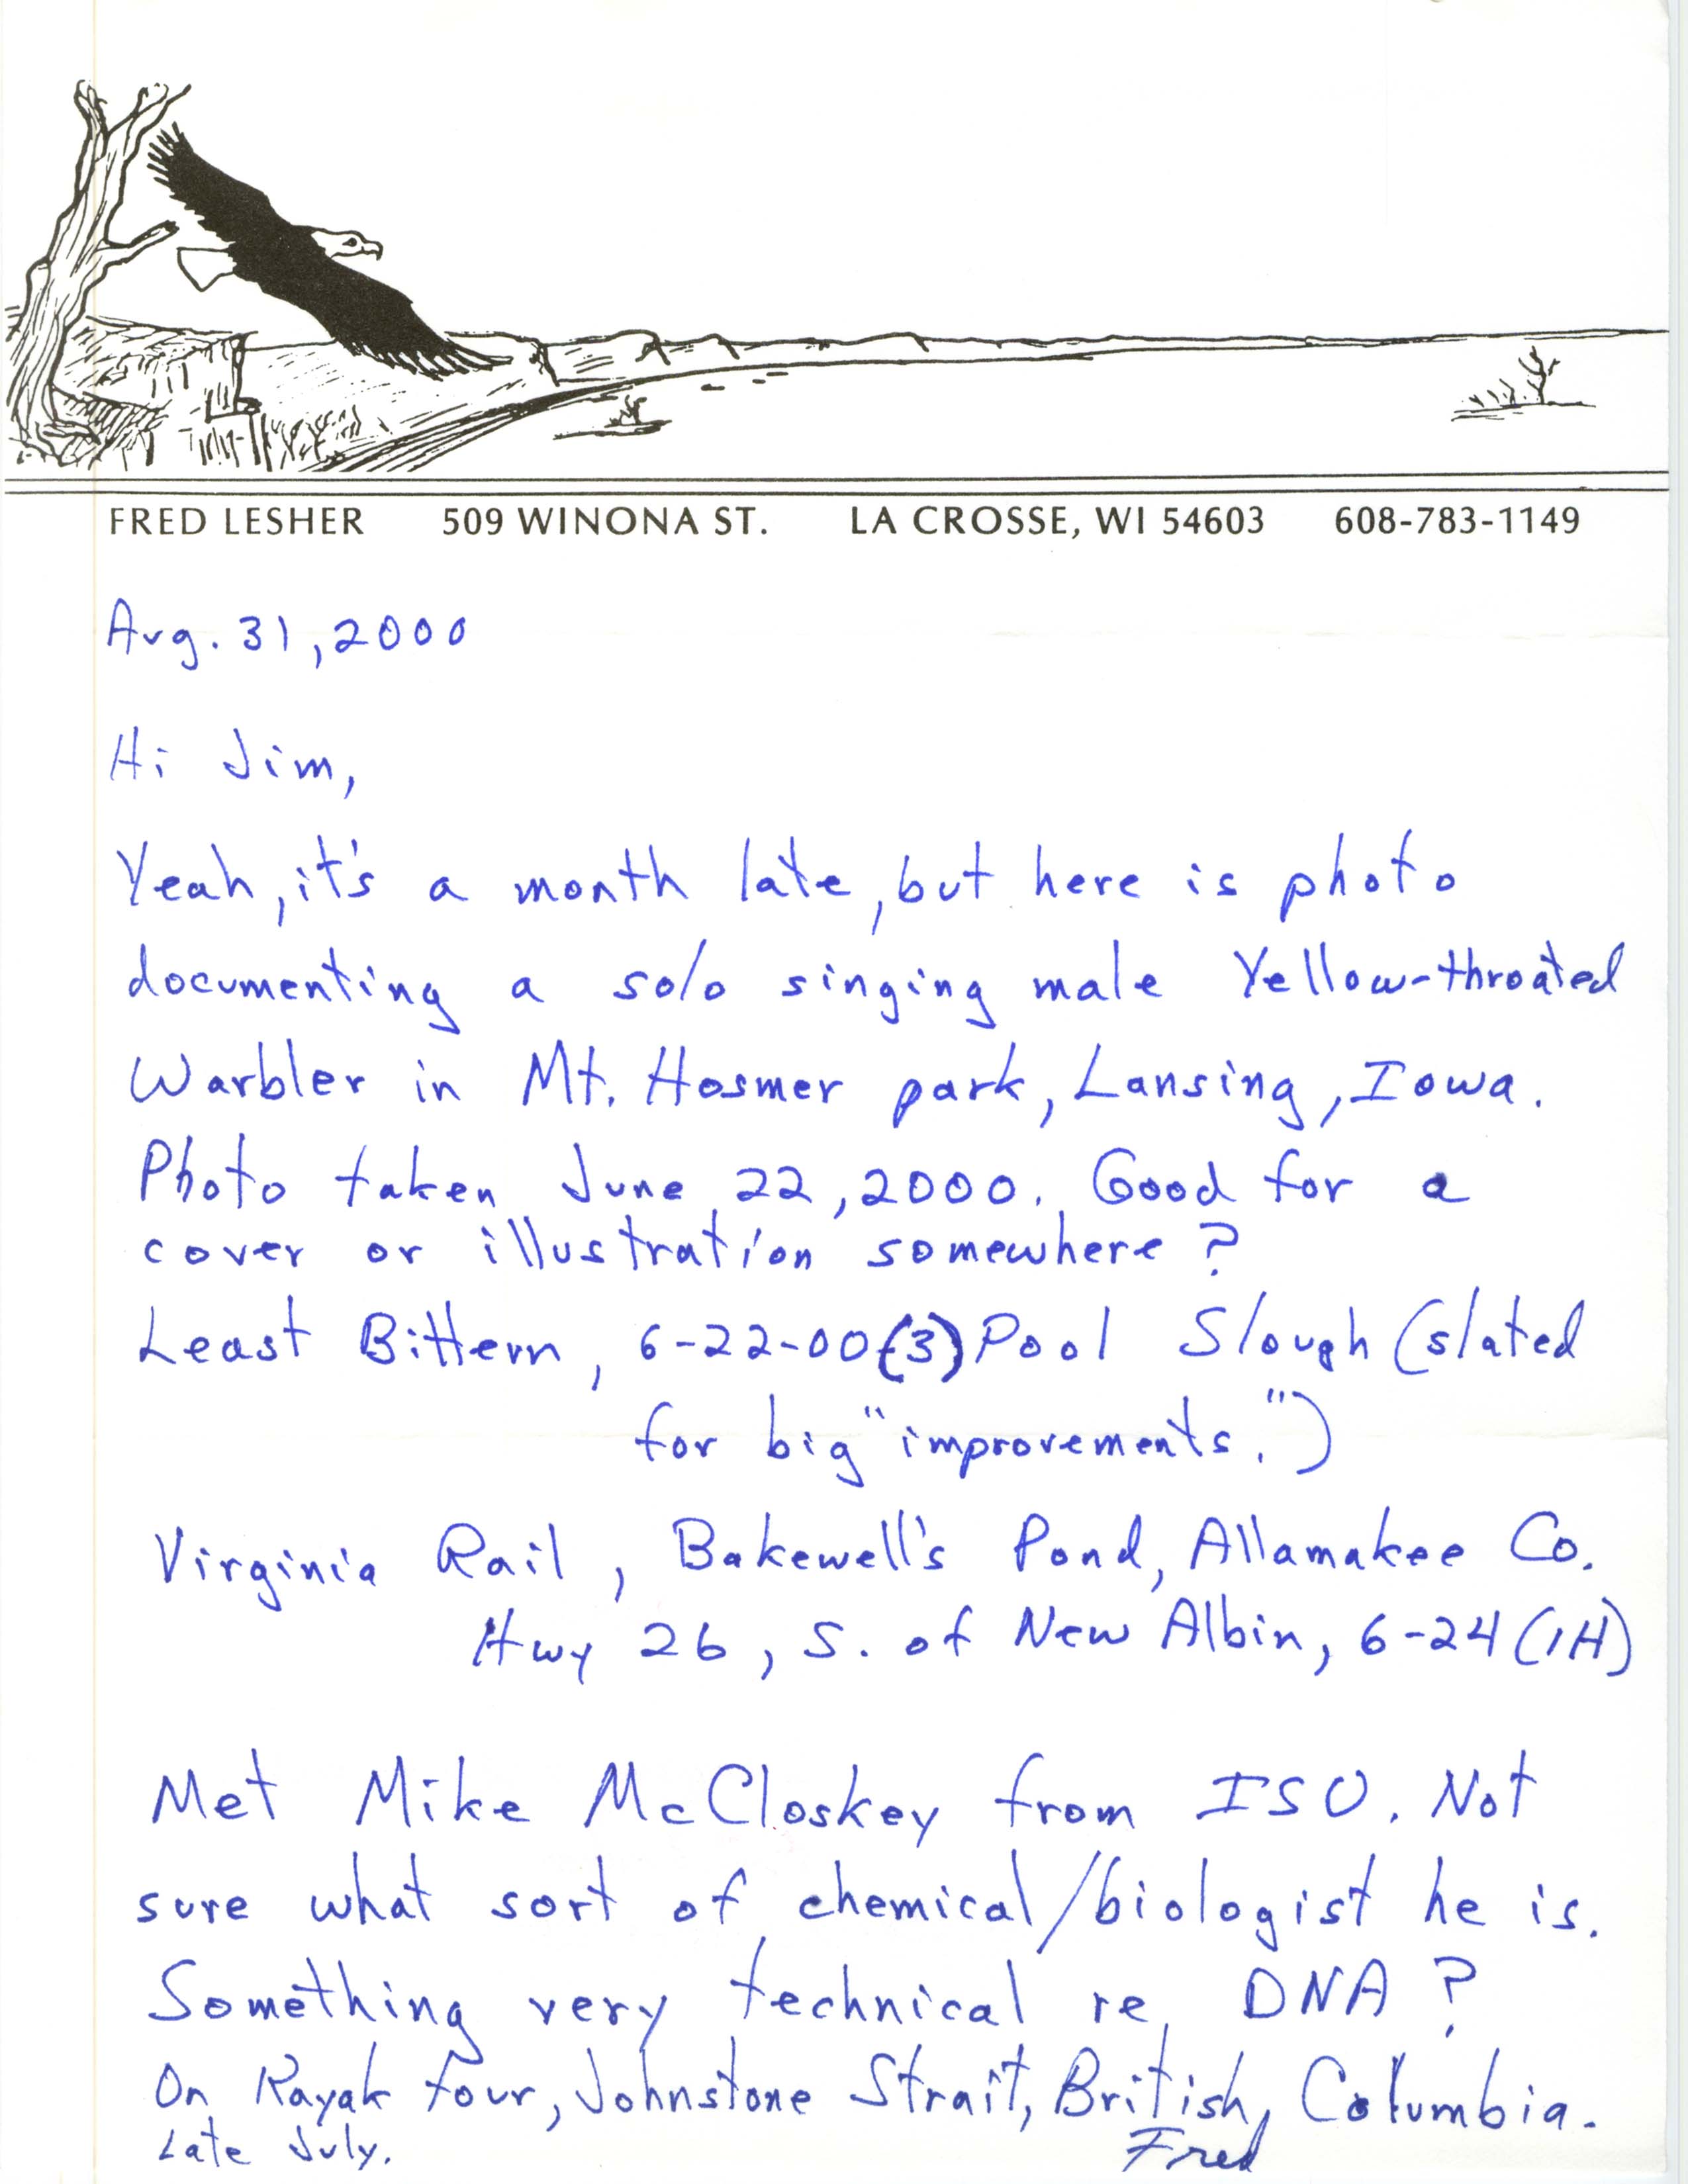 Fred Lesher letter to James J. Dinsmore regarding bird sightings, August 31, 2000